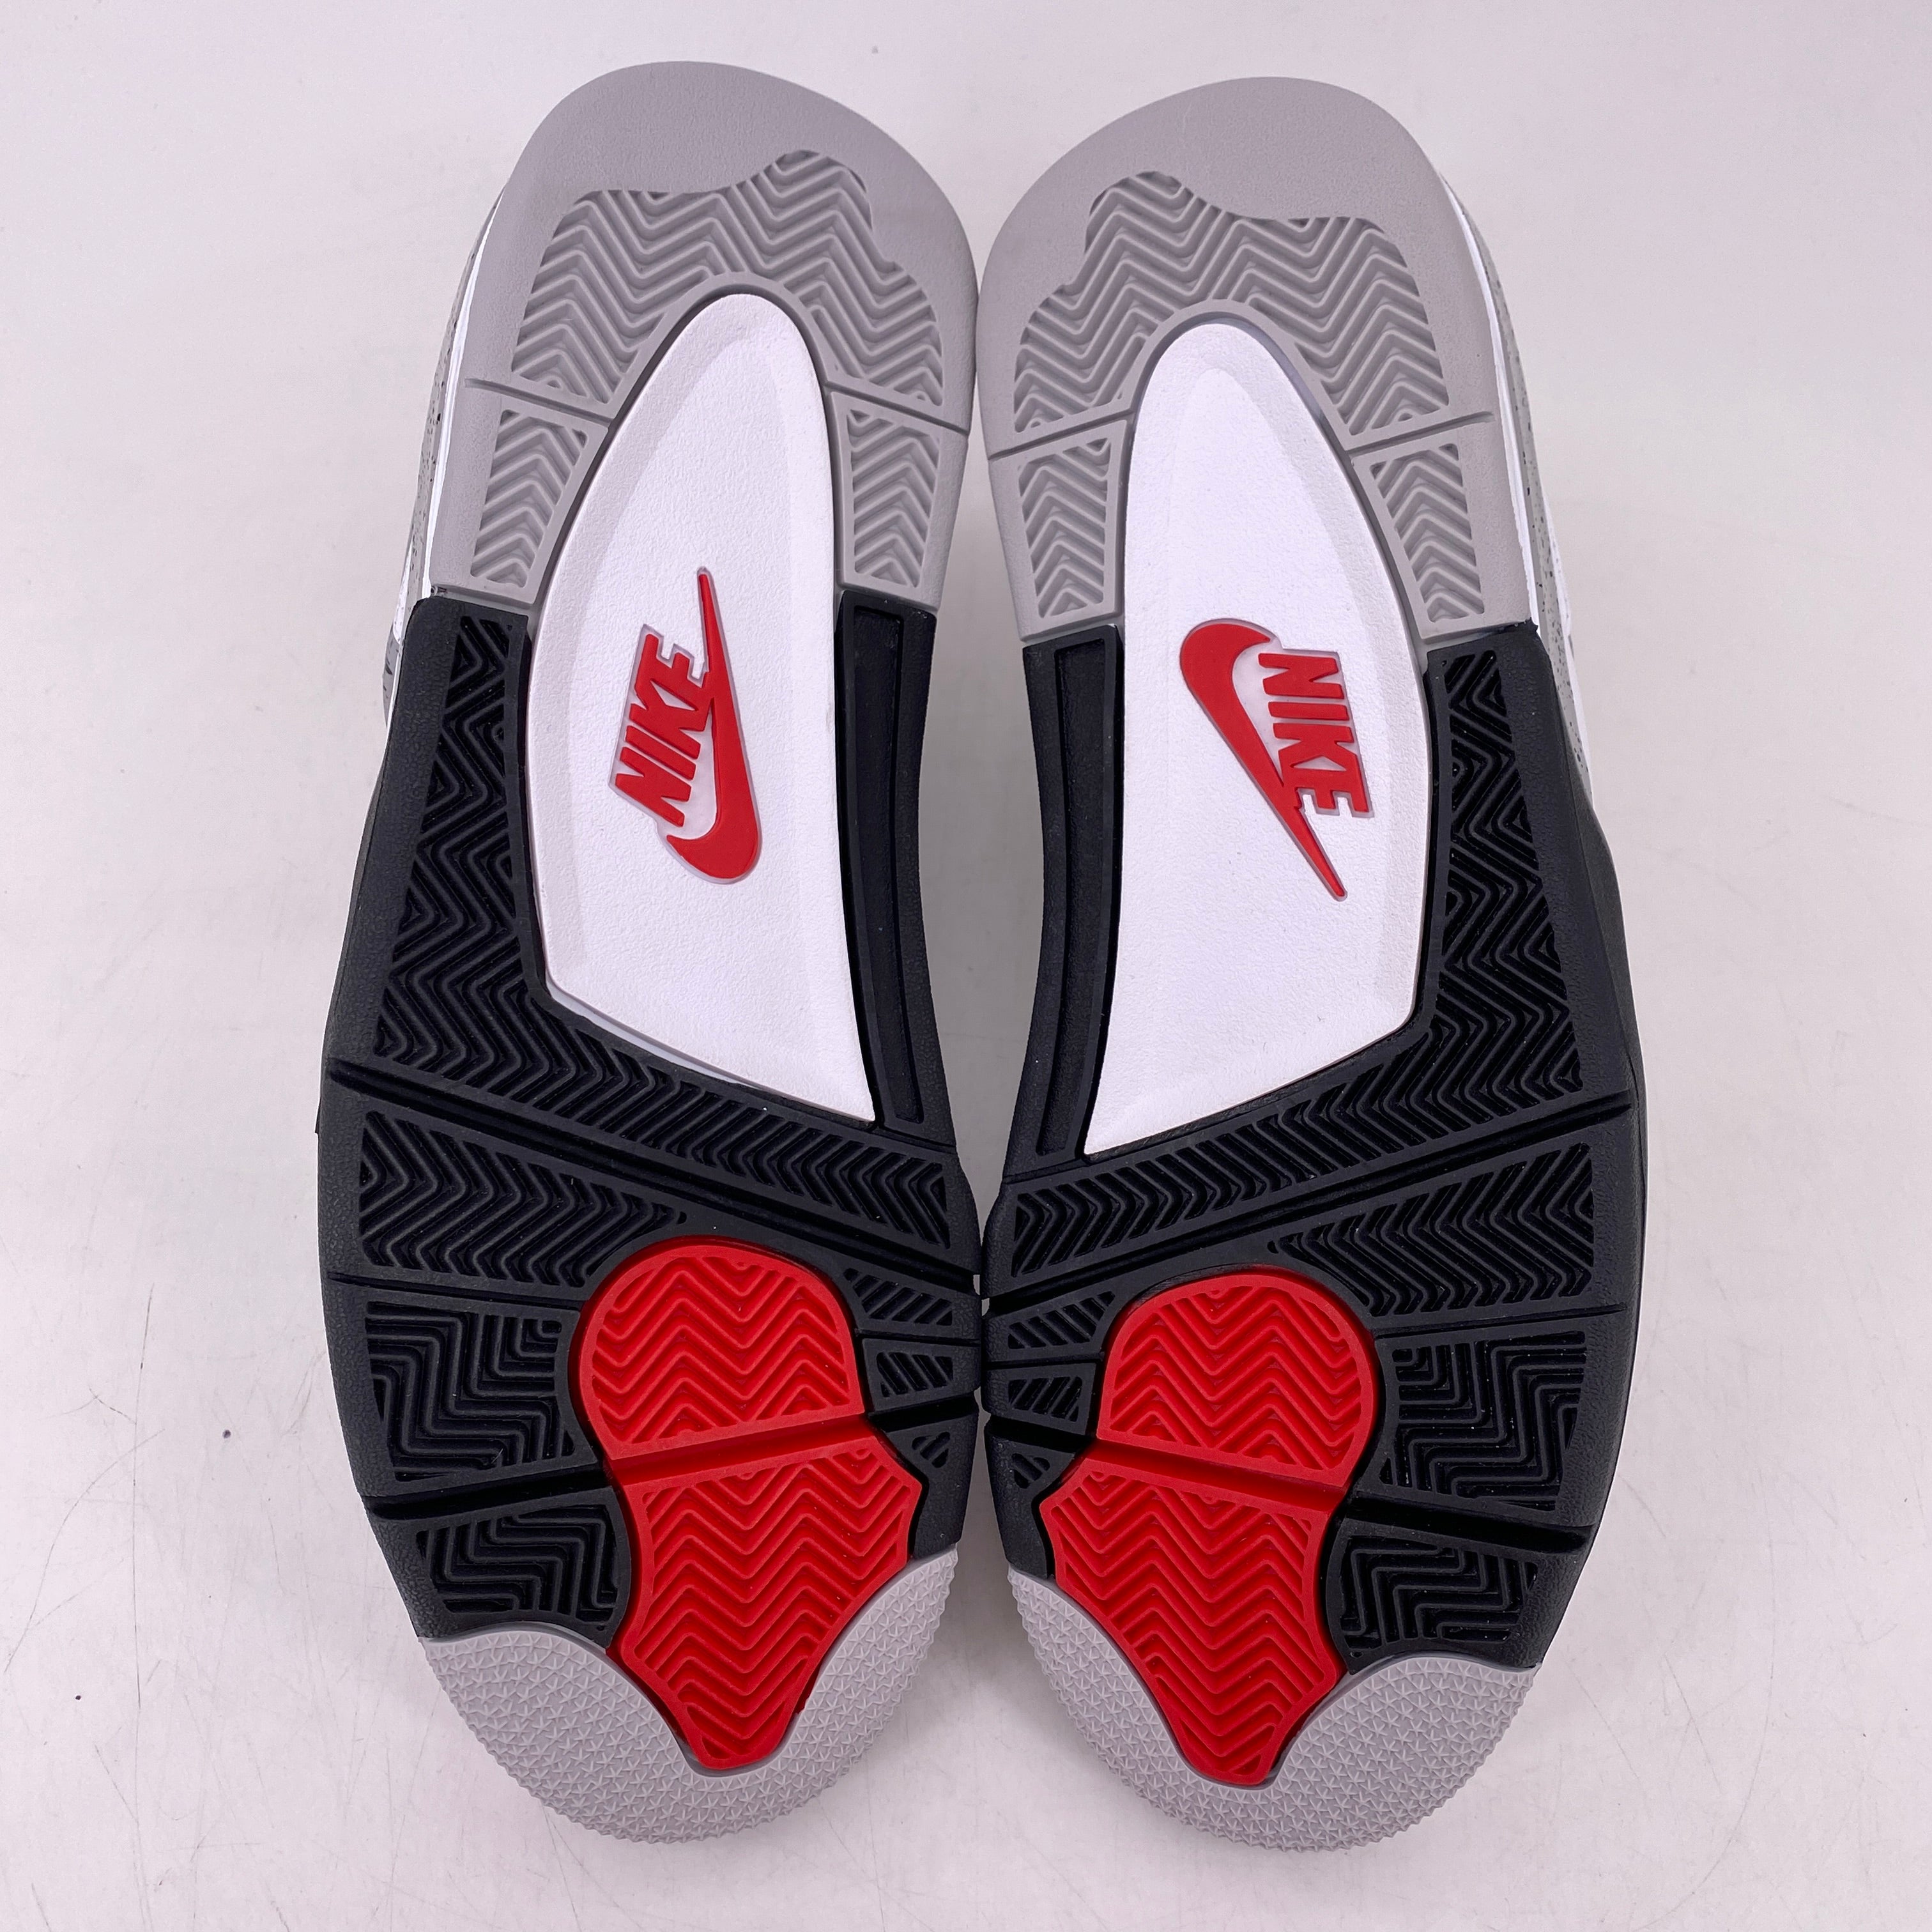 Air Jordan 4 Retro &quot;White Cement&quot; 2016 New Size 10.5